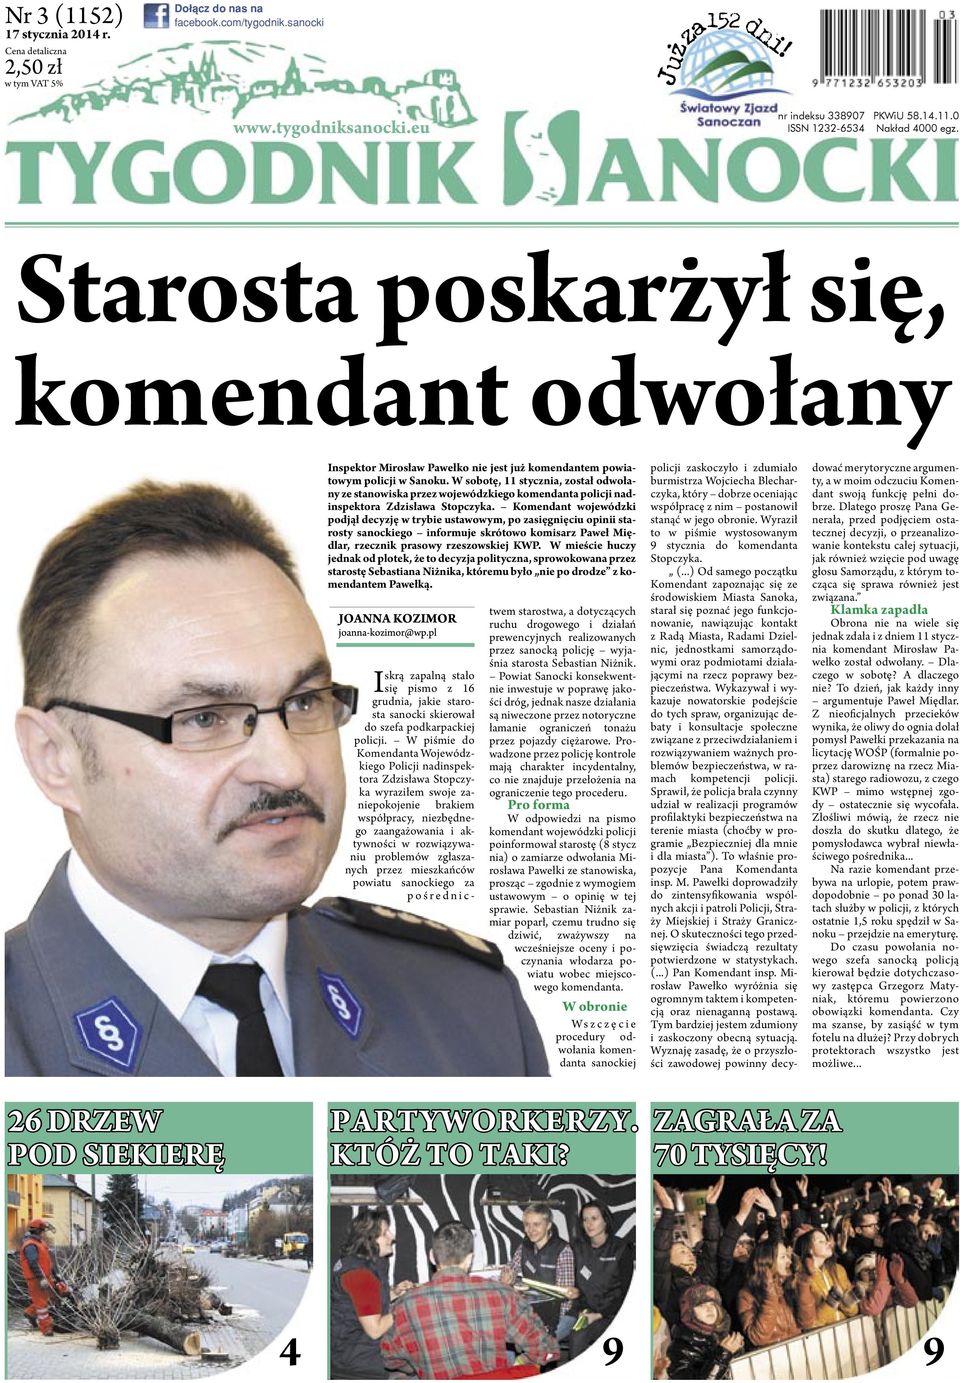 W sobotę, 11 stycznia, został odwołany ze stanowiska przez wojewódzkiego komendanta policji nadinspektora Zdzisława Stopczyka.